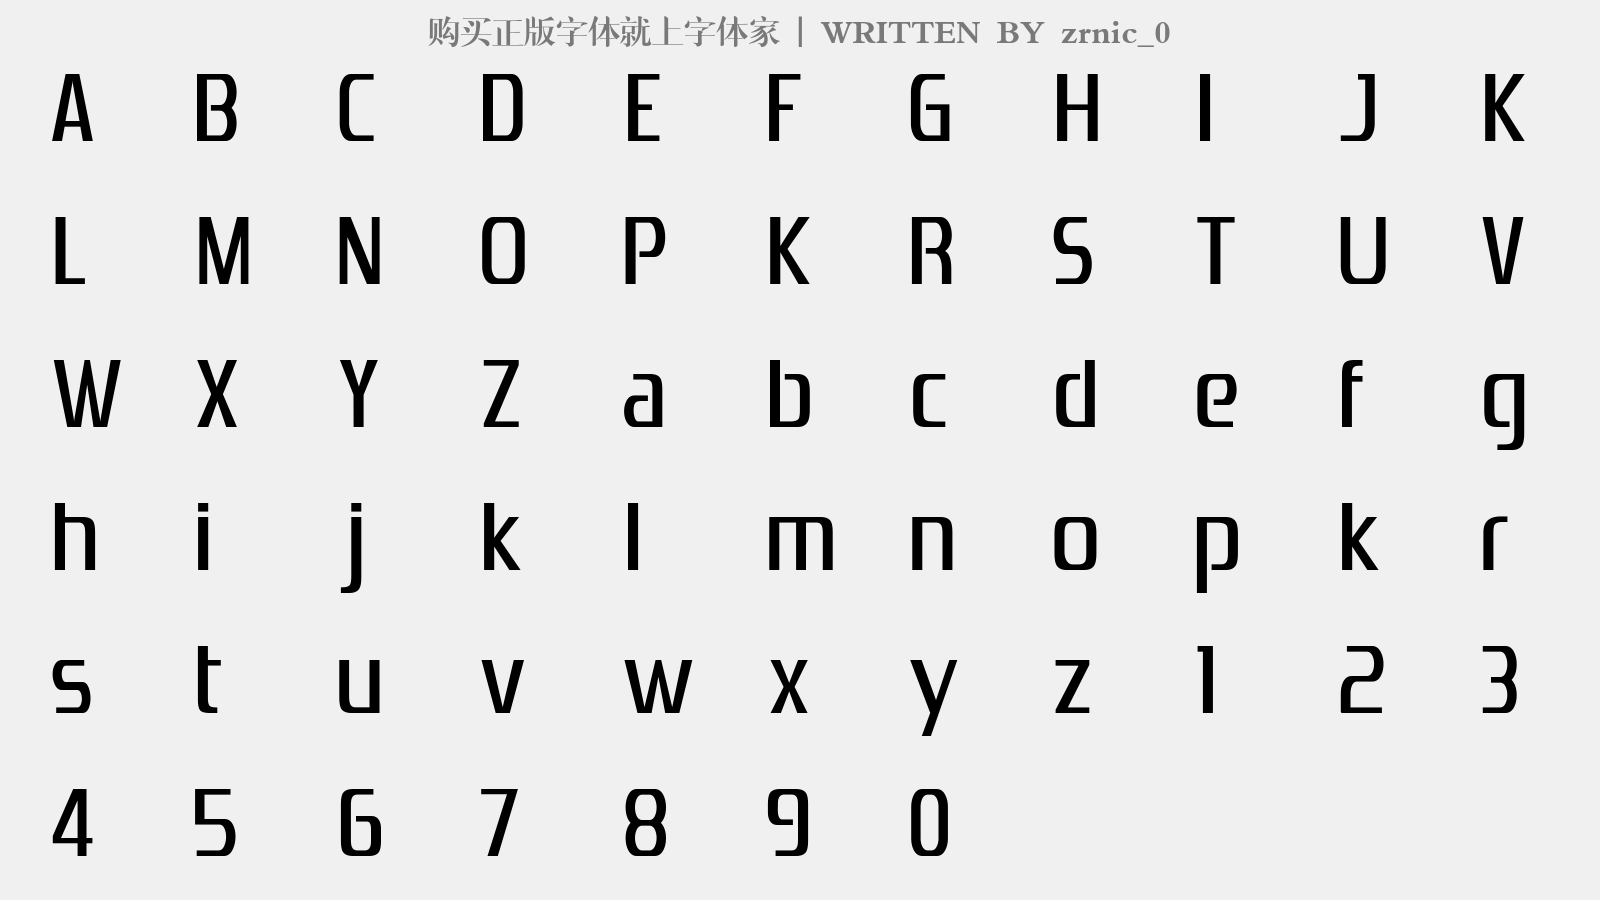 zrnic_0 - 大写字母/小写字母/数字